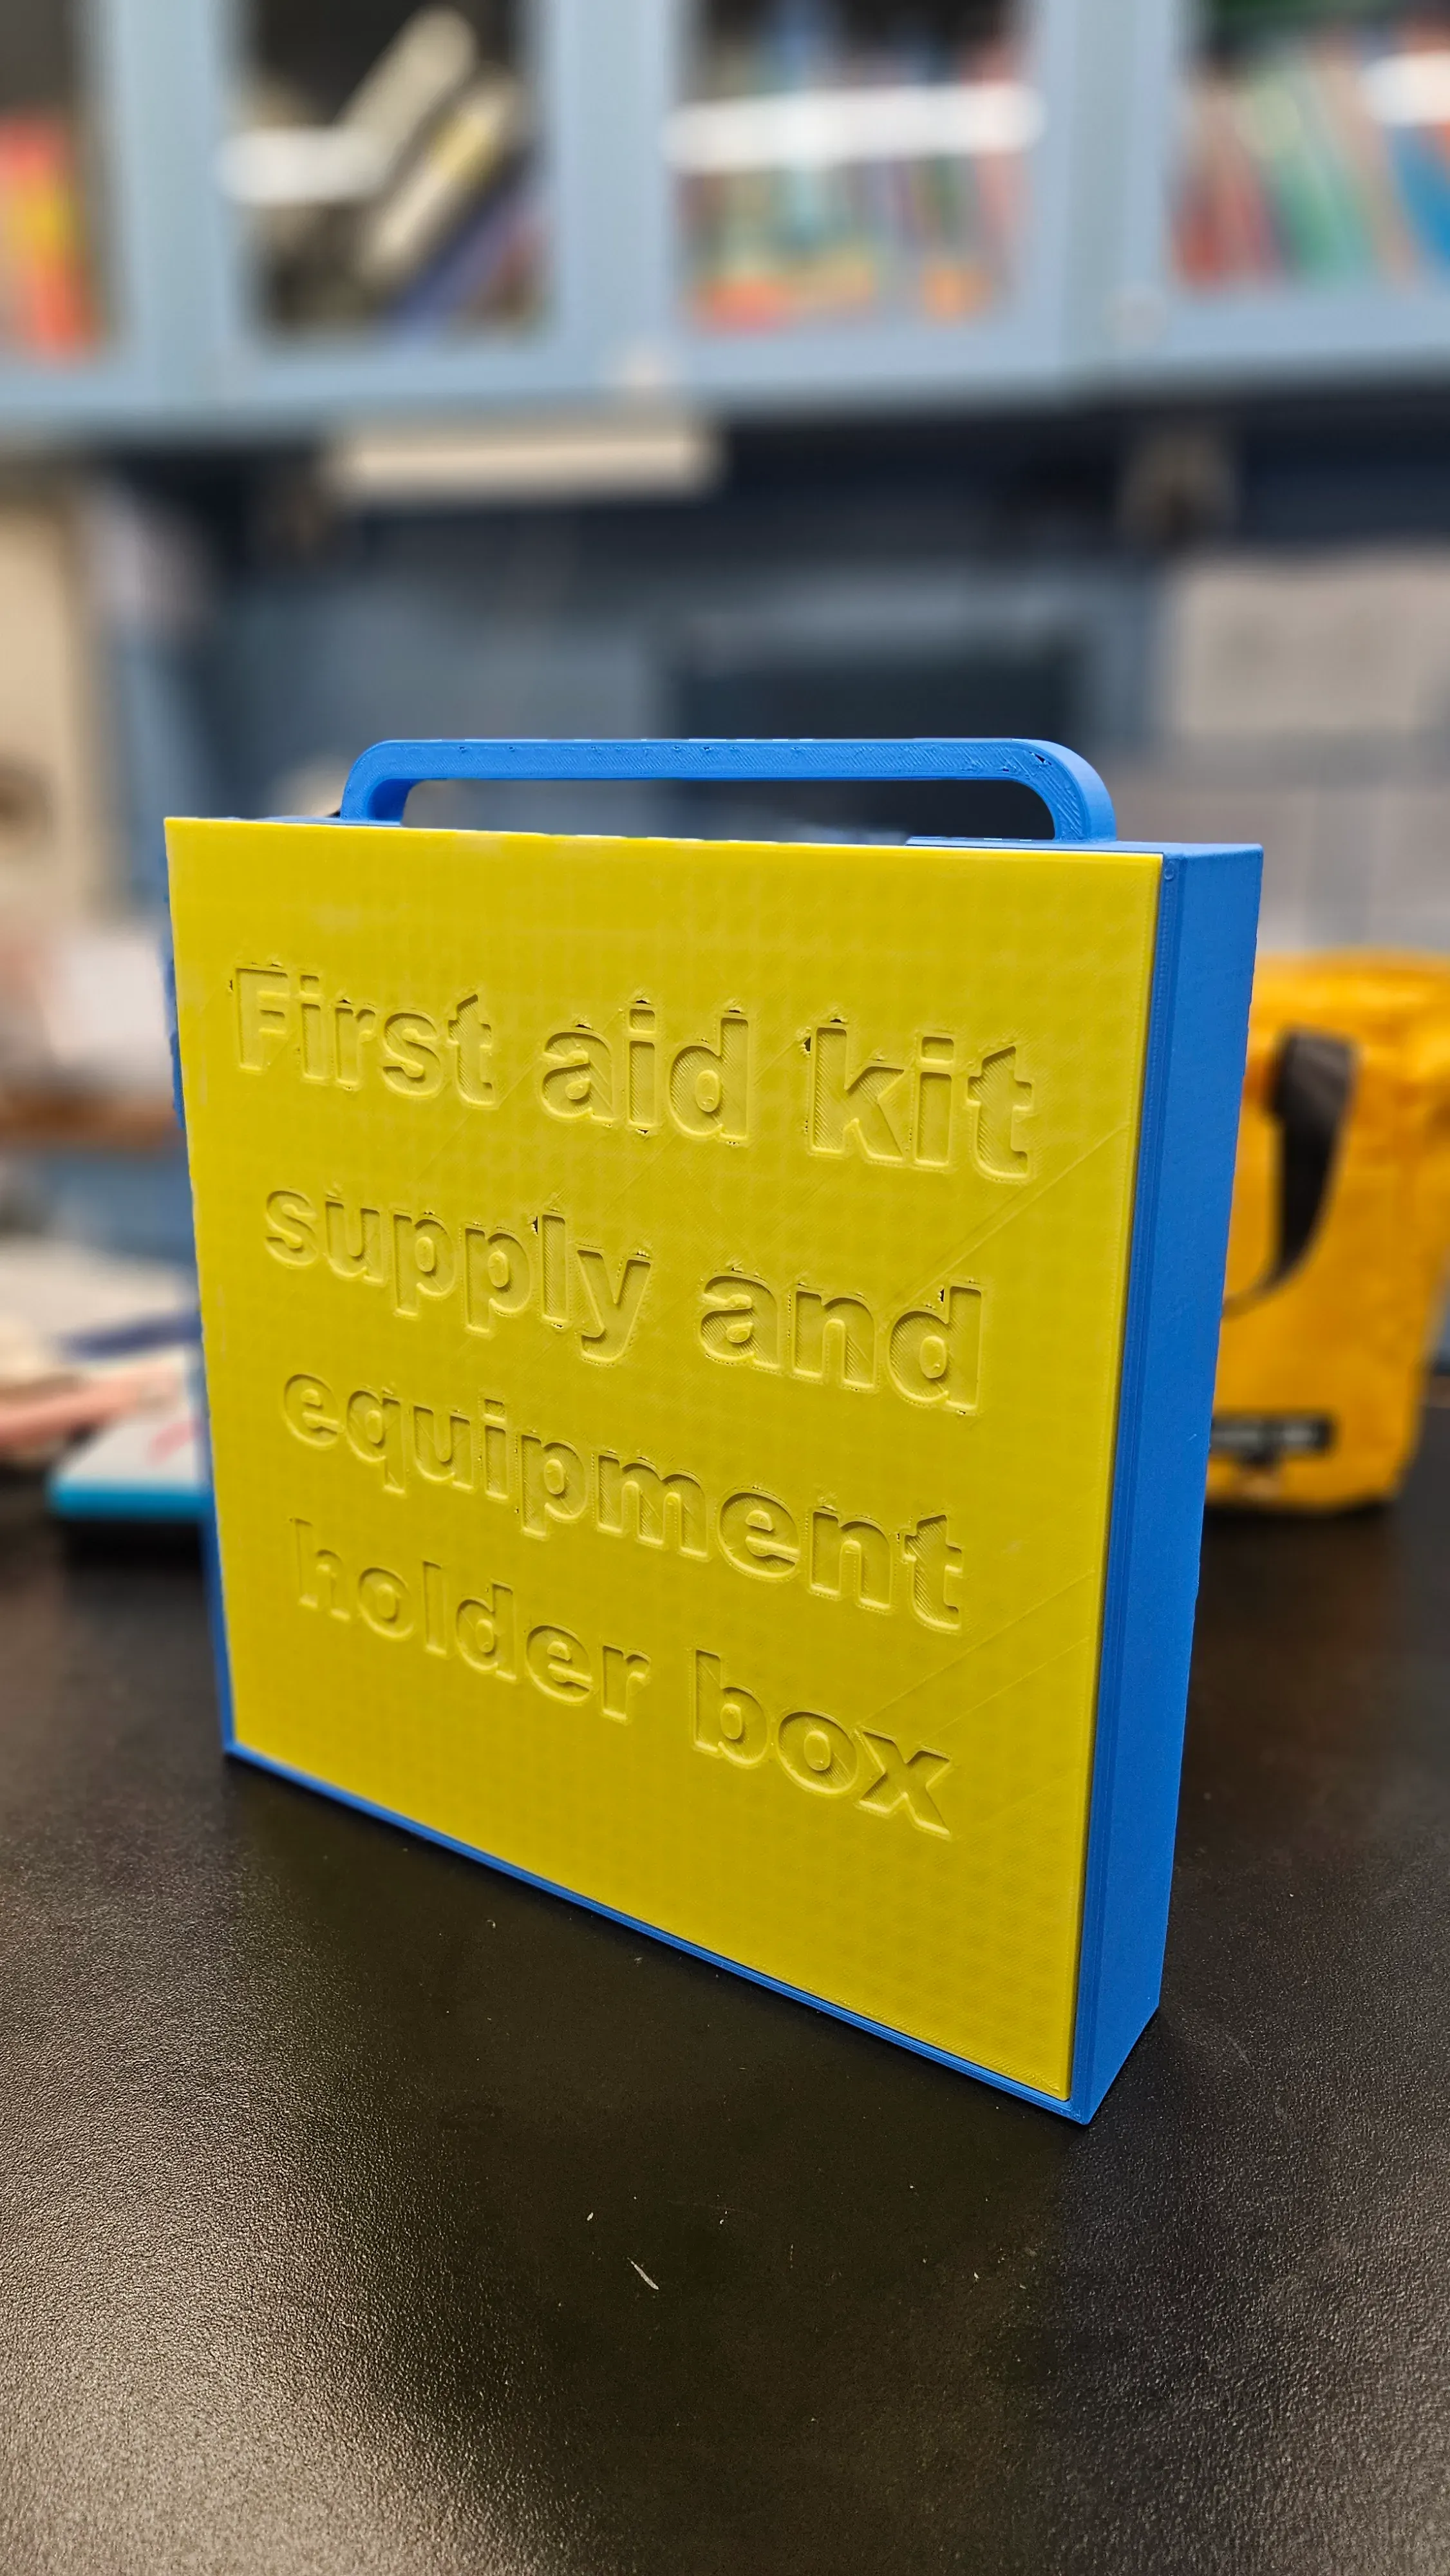 急救箱物資盒 FIRST AID KIT SUPPLY AND EQUIPMENT HOLDER BOX